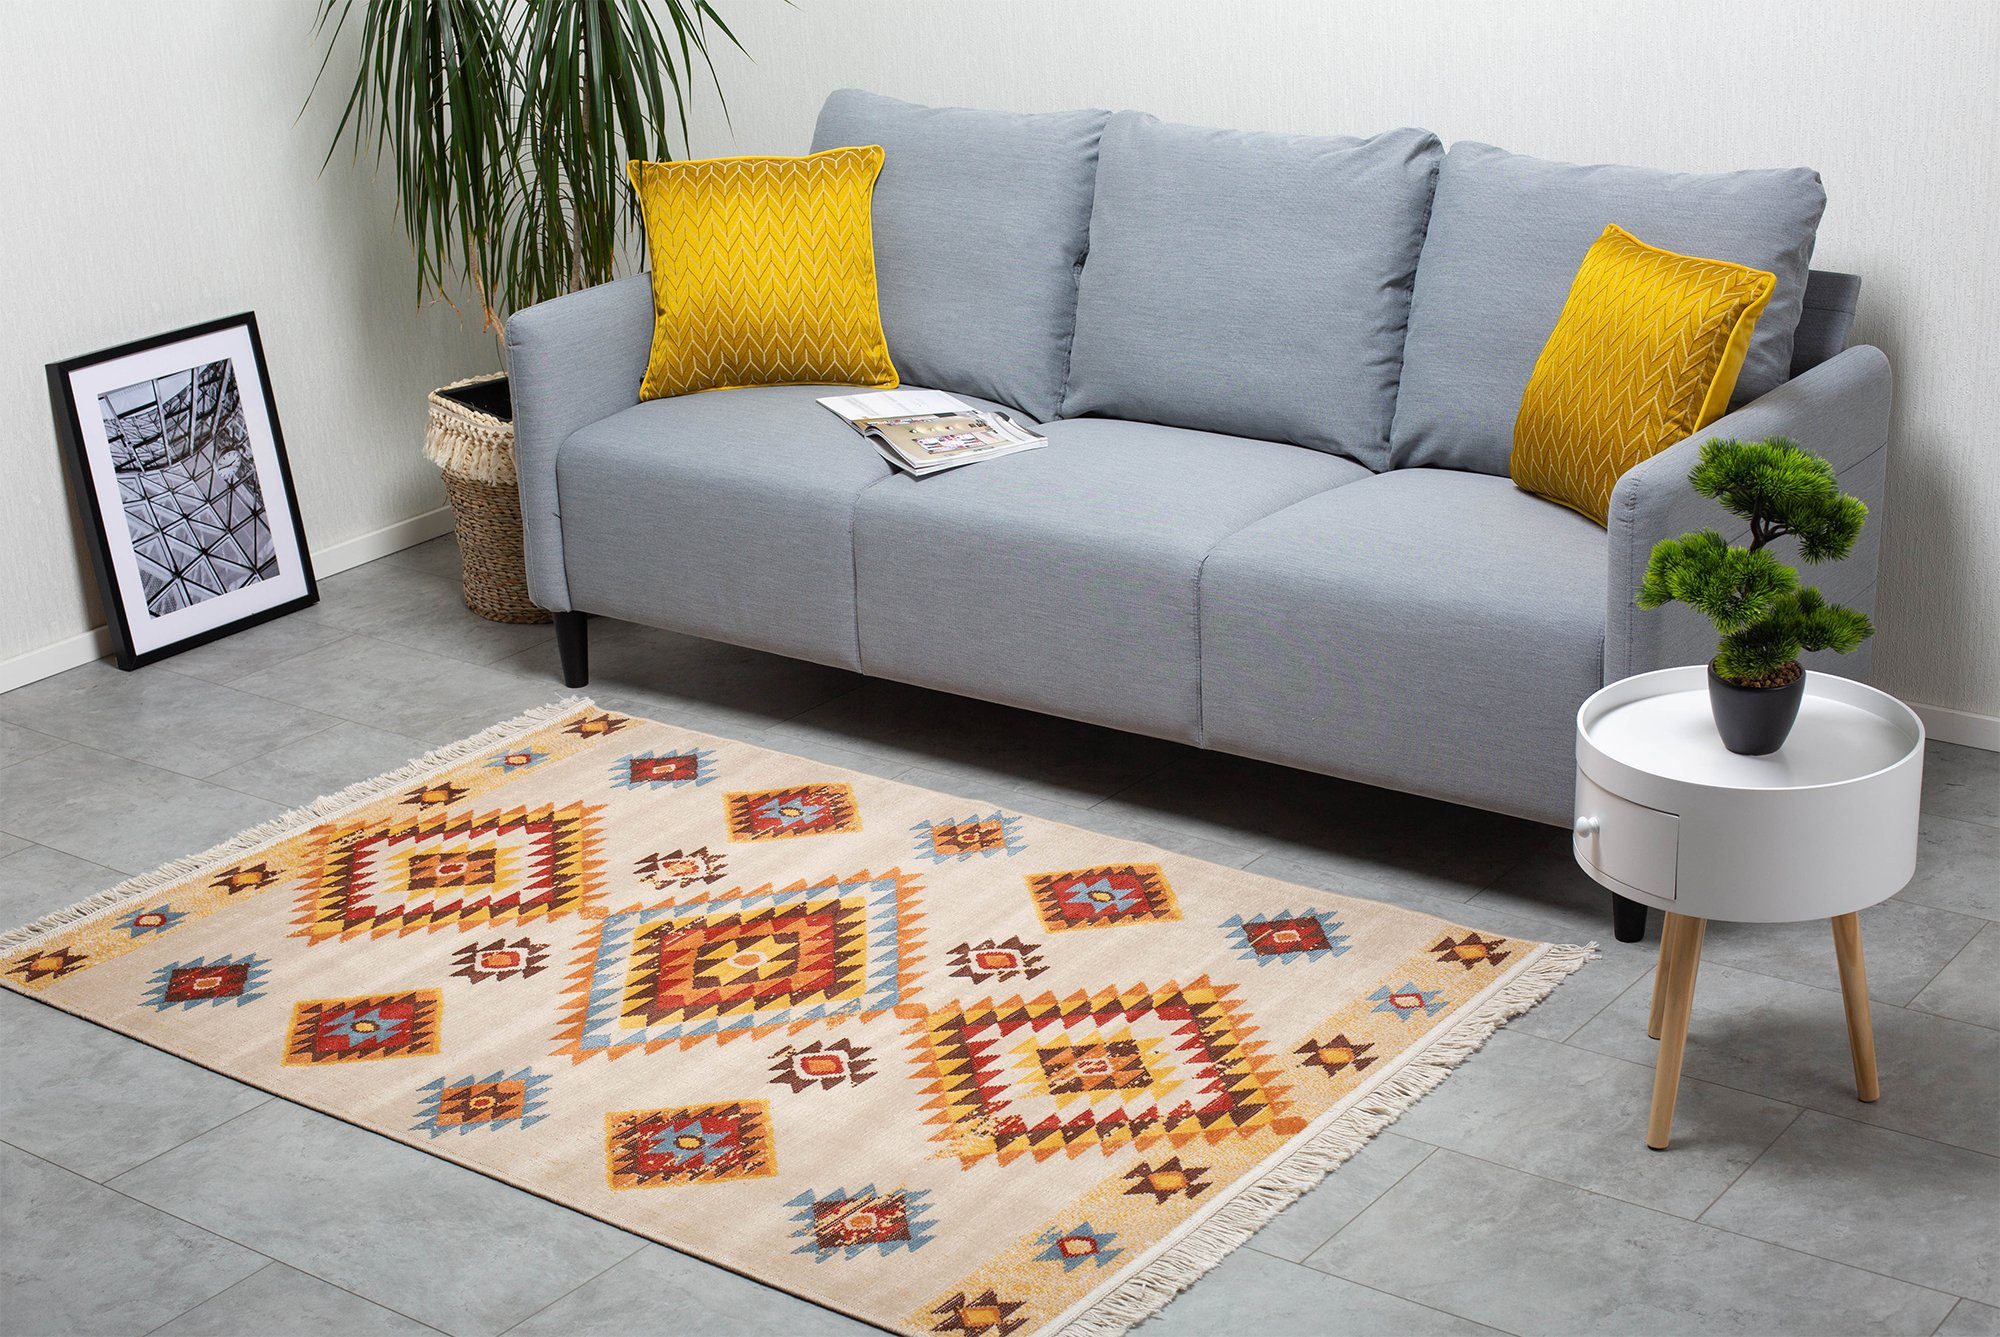 Teppich Fransenteppich LUIS im Ethno-Stil - flexibel & faltbar für Wohnzimmer/Schlafzimmer/Esszimmer, recycelte Baumwolle und Kunstfaser, DomDeco Beige